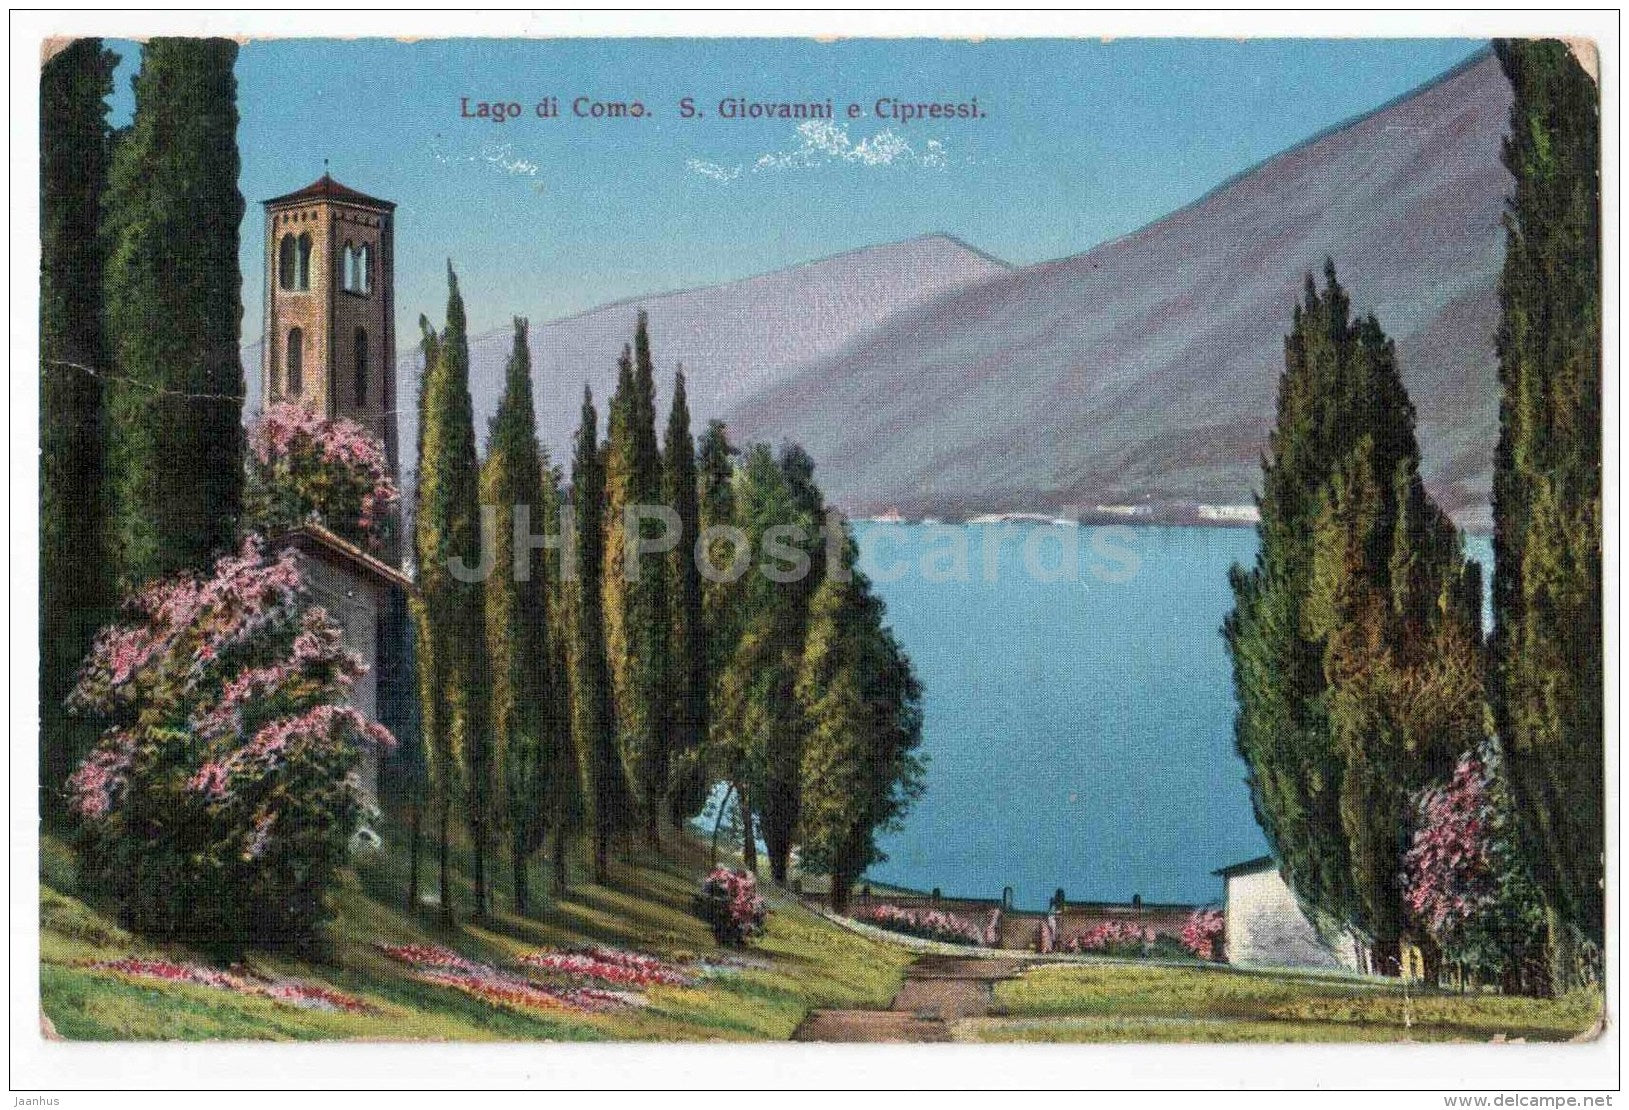 Lago di Como - S. Giovanni e Cipressi - Italy - used in 1926 - JH Postcards